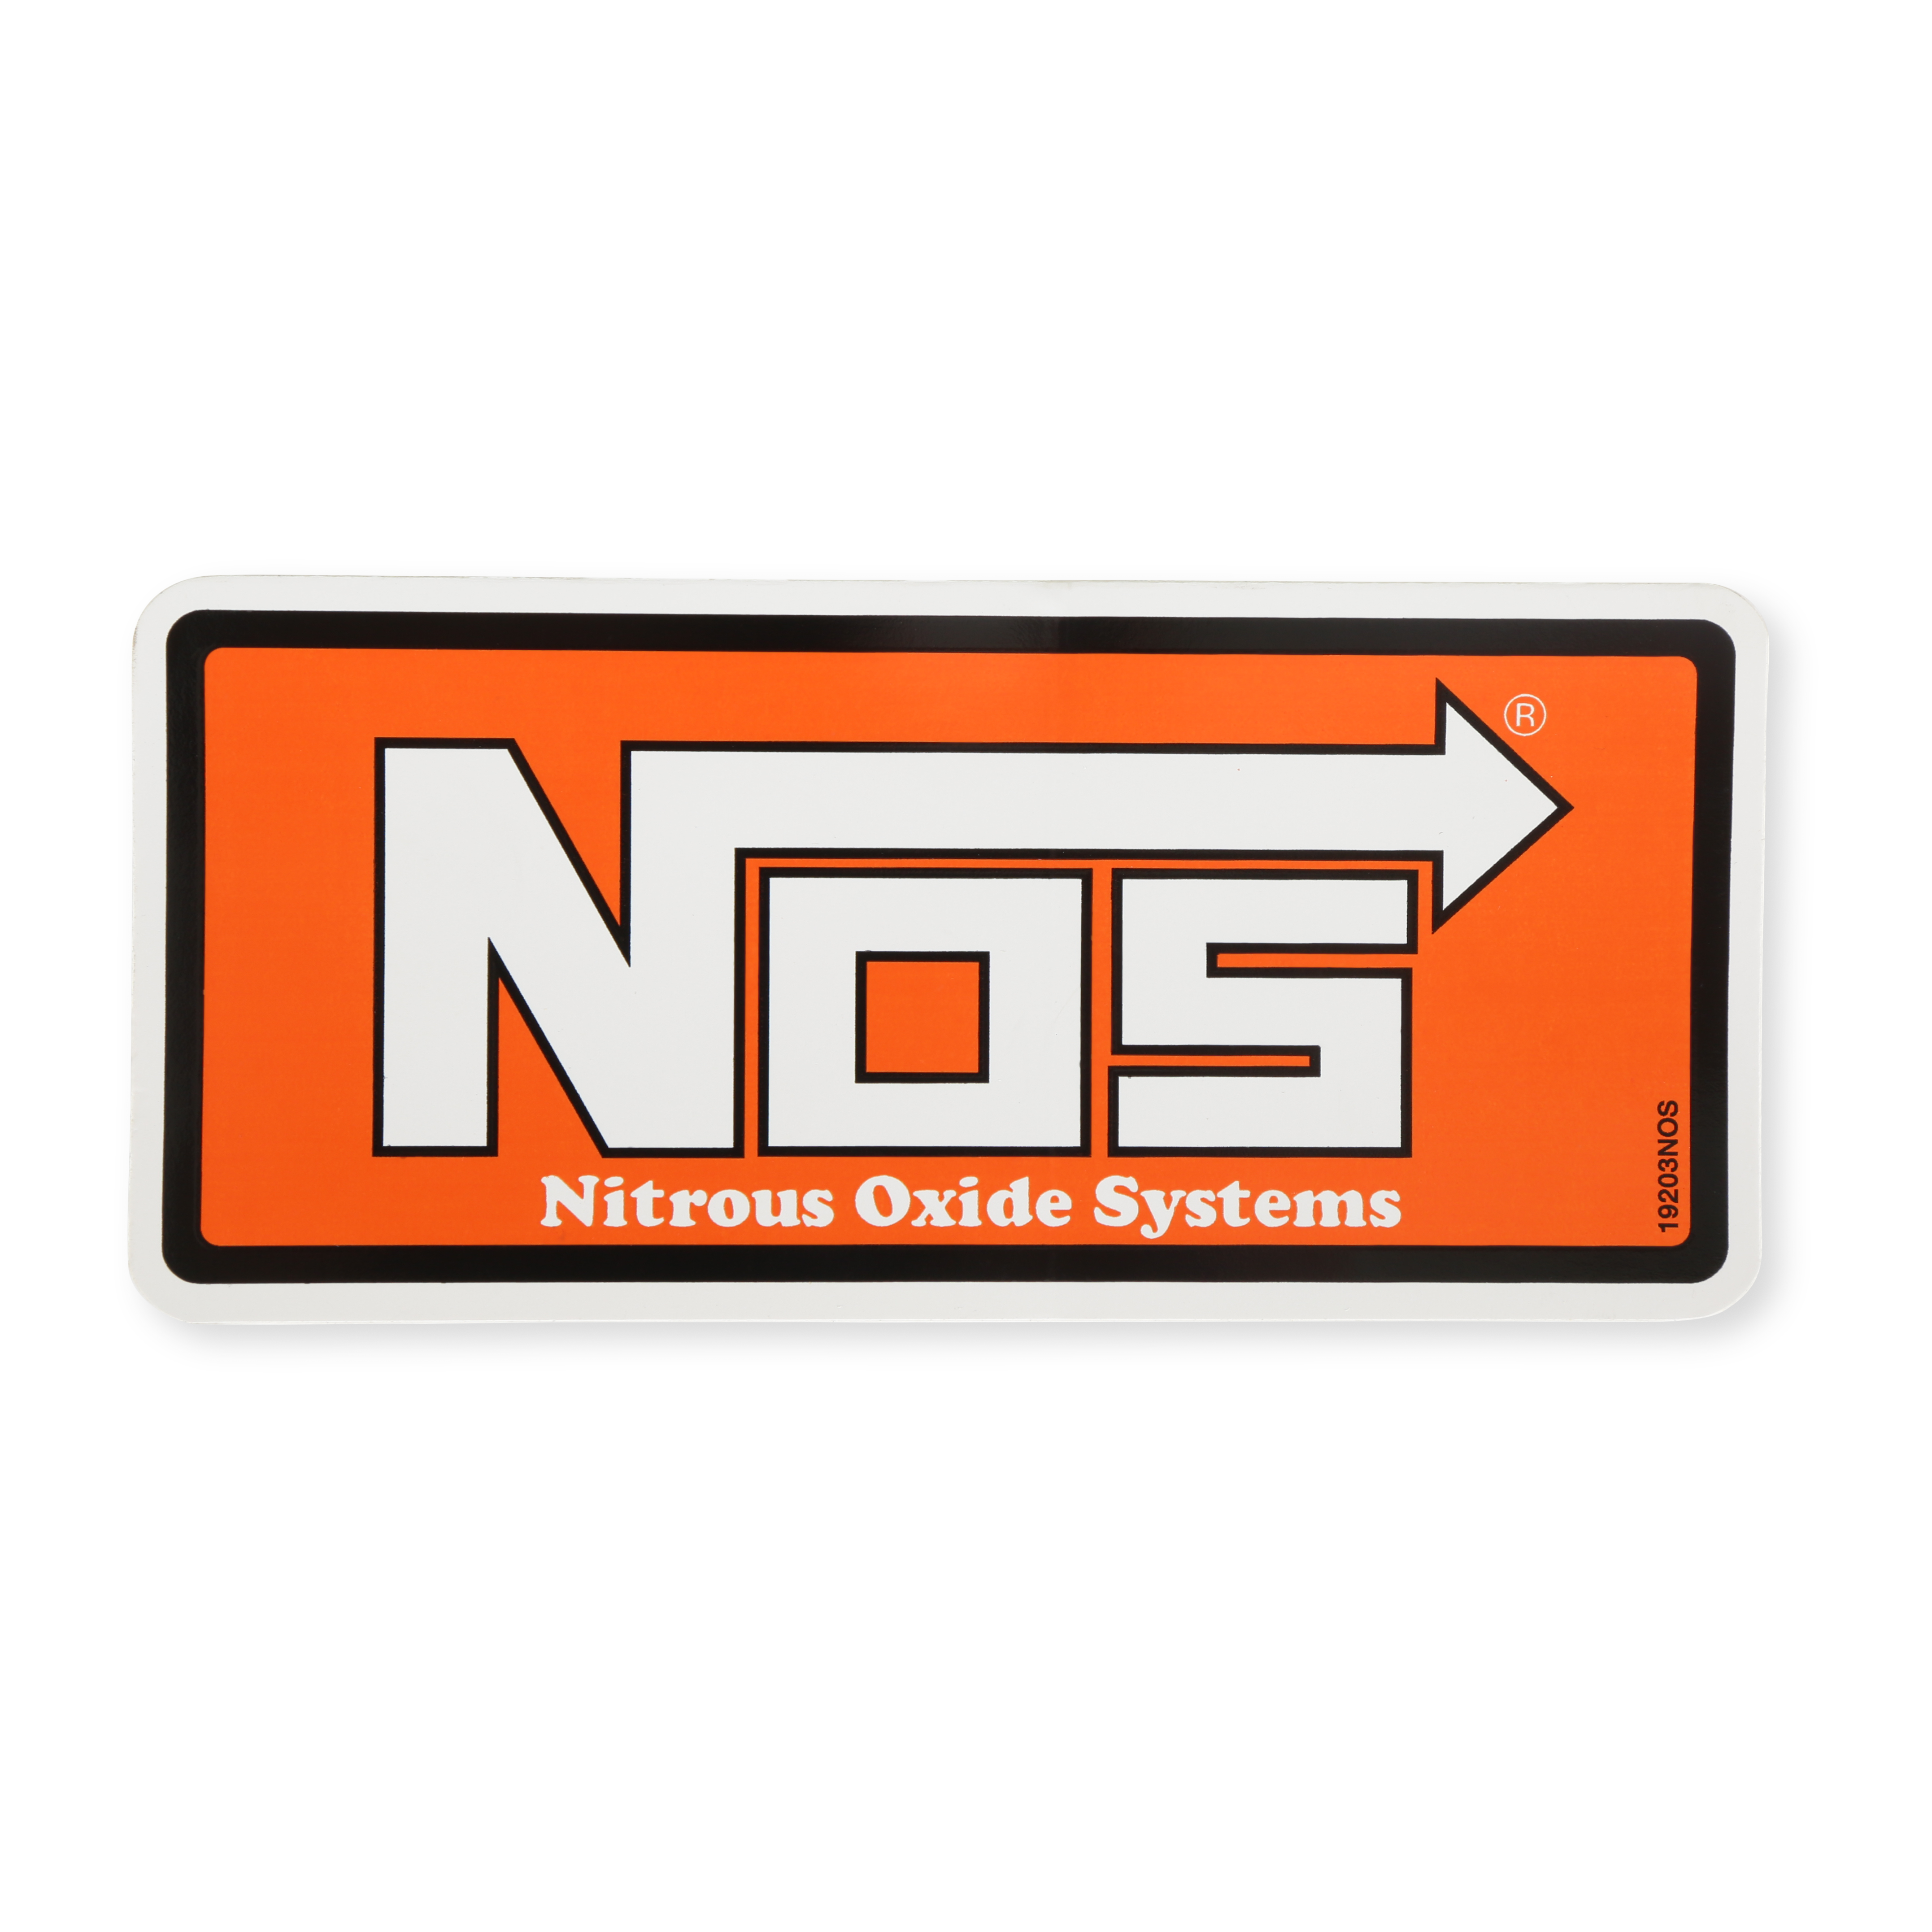 NOS/Nitrous Oxide System Exterior Decal 19203NOS